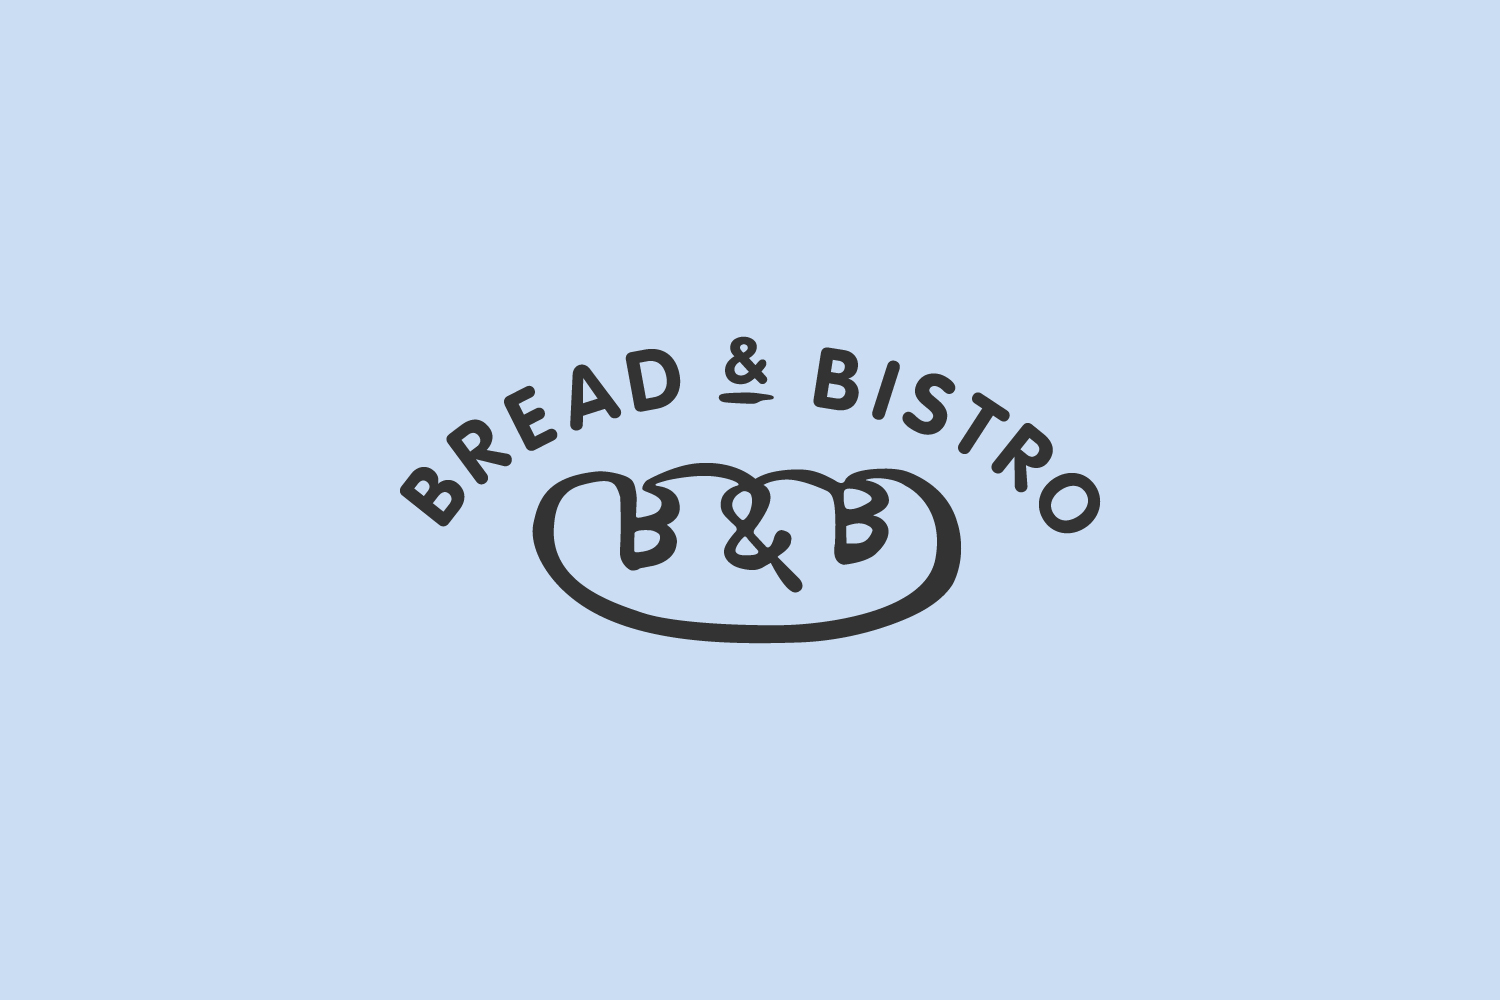 Bread & Bistro Bakery Café